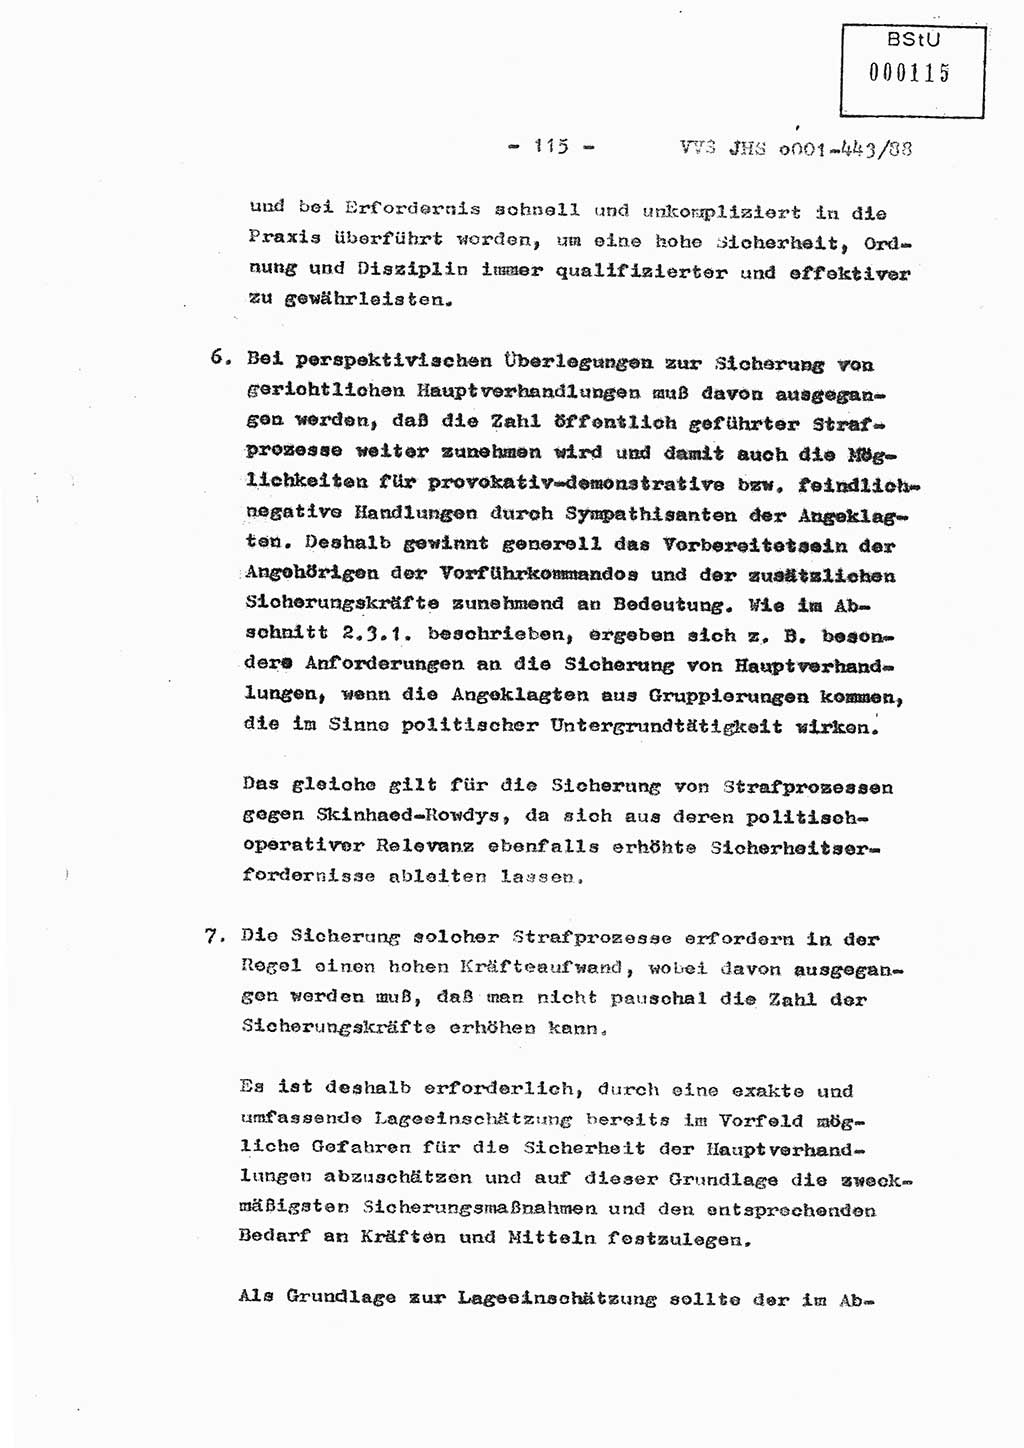 Diplomarbeit Hauptmann Michael Rast (Abt. ⅩⅣ), Major Bernd Rahaus (Abt. ⅩⅣ), Ministerium für Staatssicherheit (MfS) [Deutsche Demokratische Republik (DDR)], Juristische Hochschule (JHS), Vertrauliche Verschlußsache (VVS) o001-443/88, Potsdam 1988, Seite 115 (Dipl.-Arb. MfS DDR JHS VVS o001-443/88 1988, S. 115)